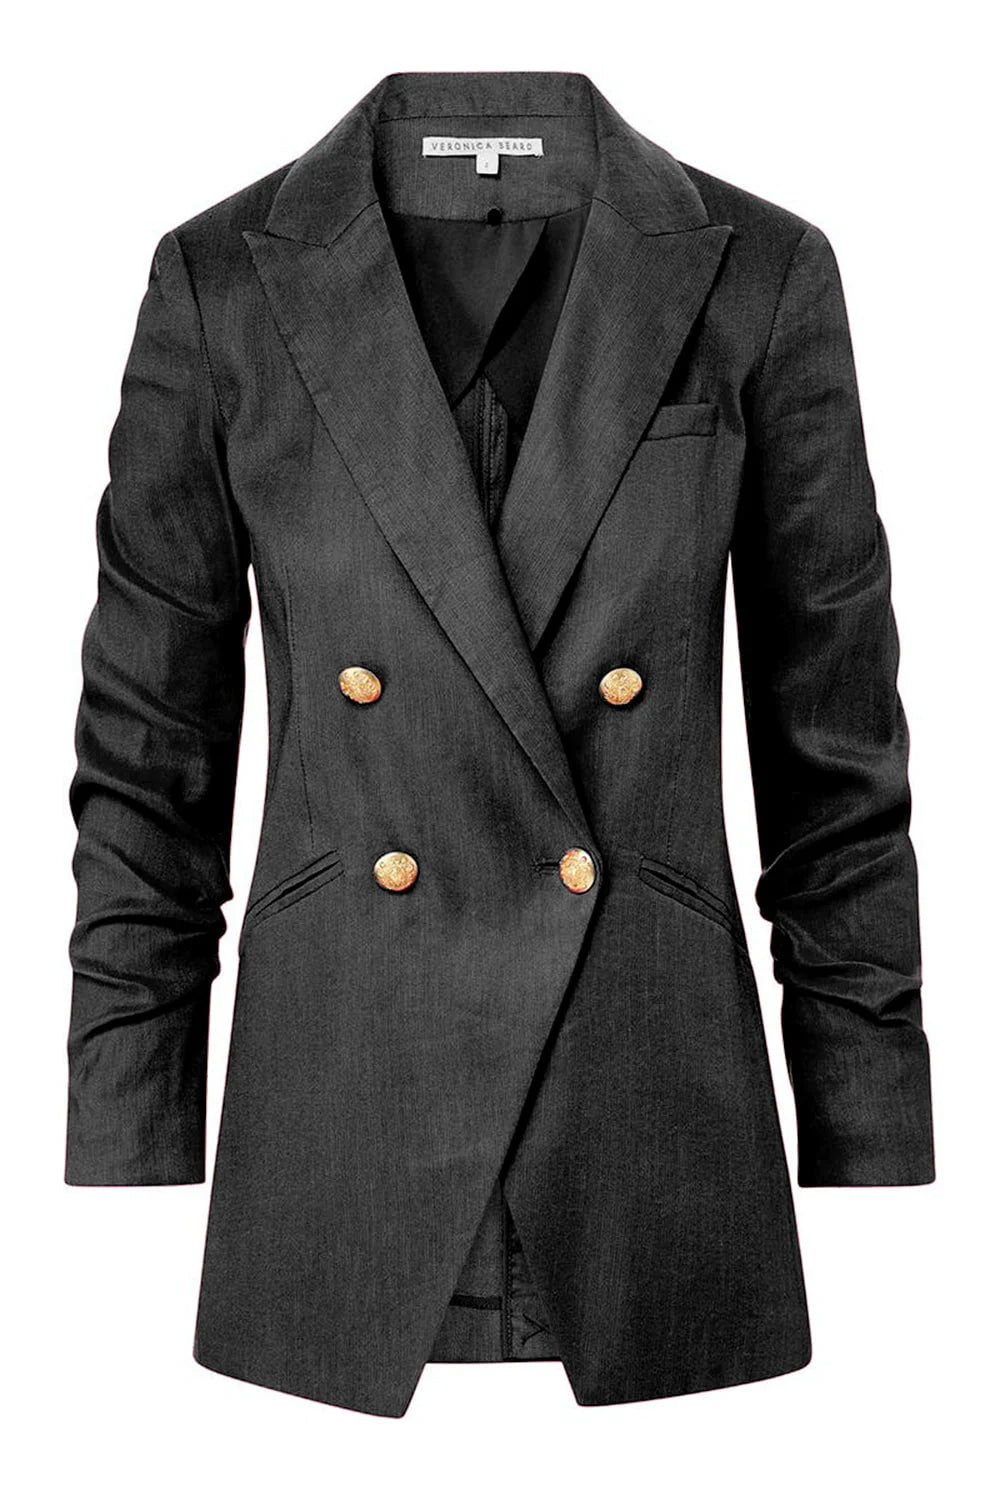 Cassie pleated wool-blend jacket in brown - Veronica Beard